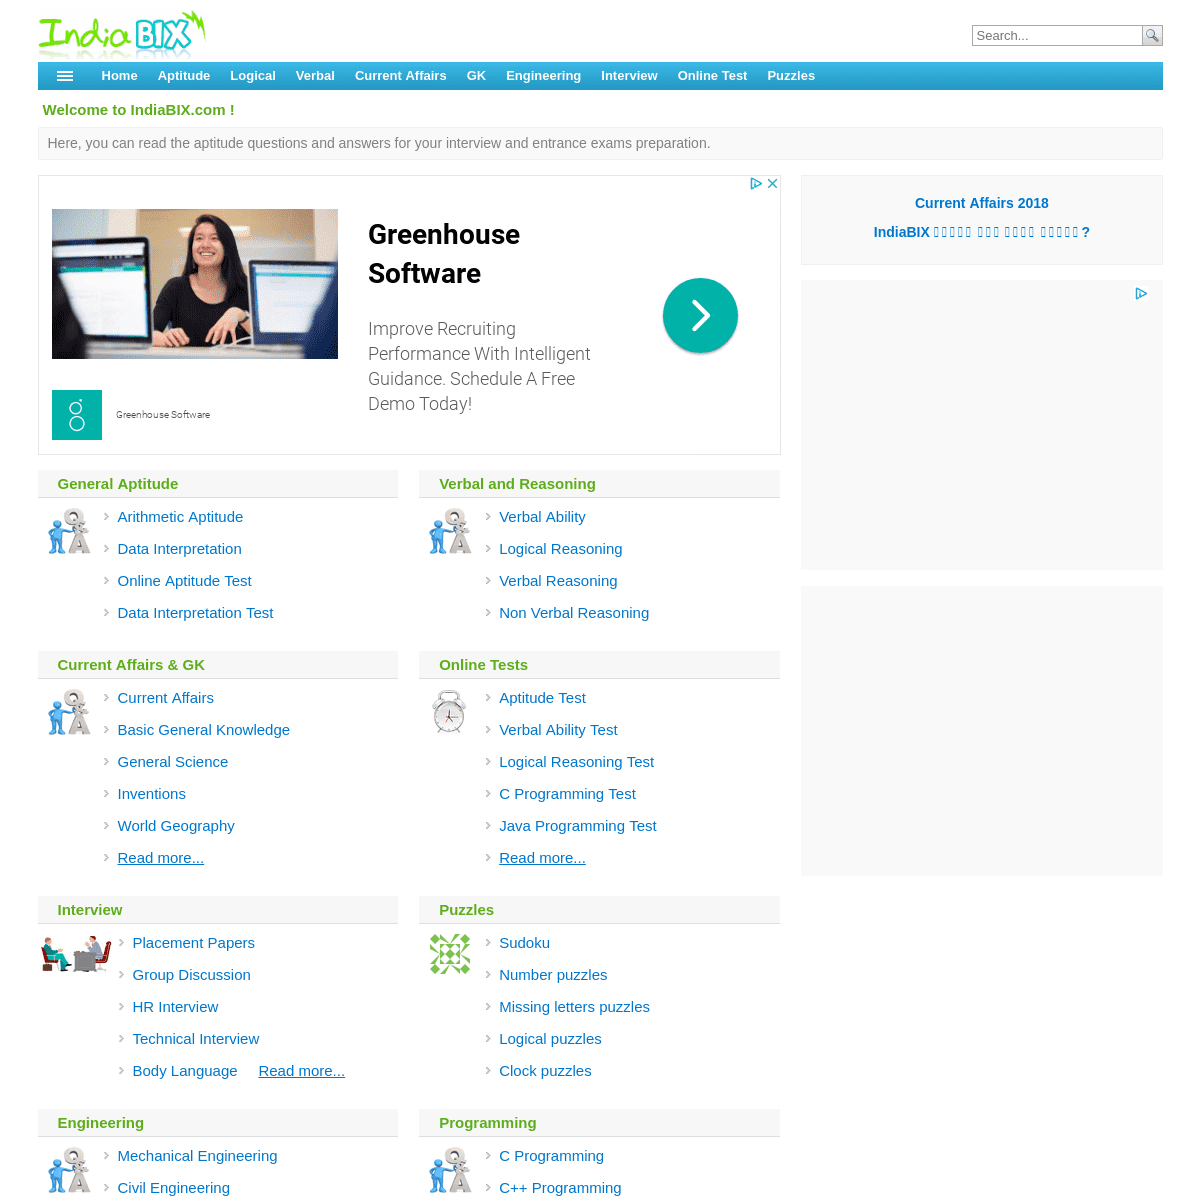 A complete backup of indiabix.com